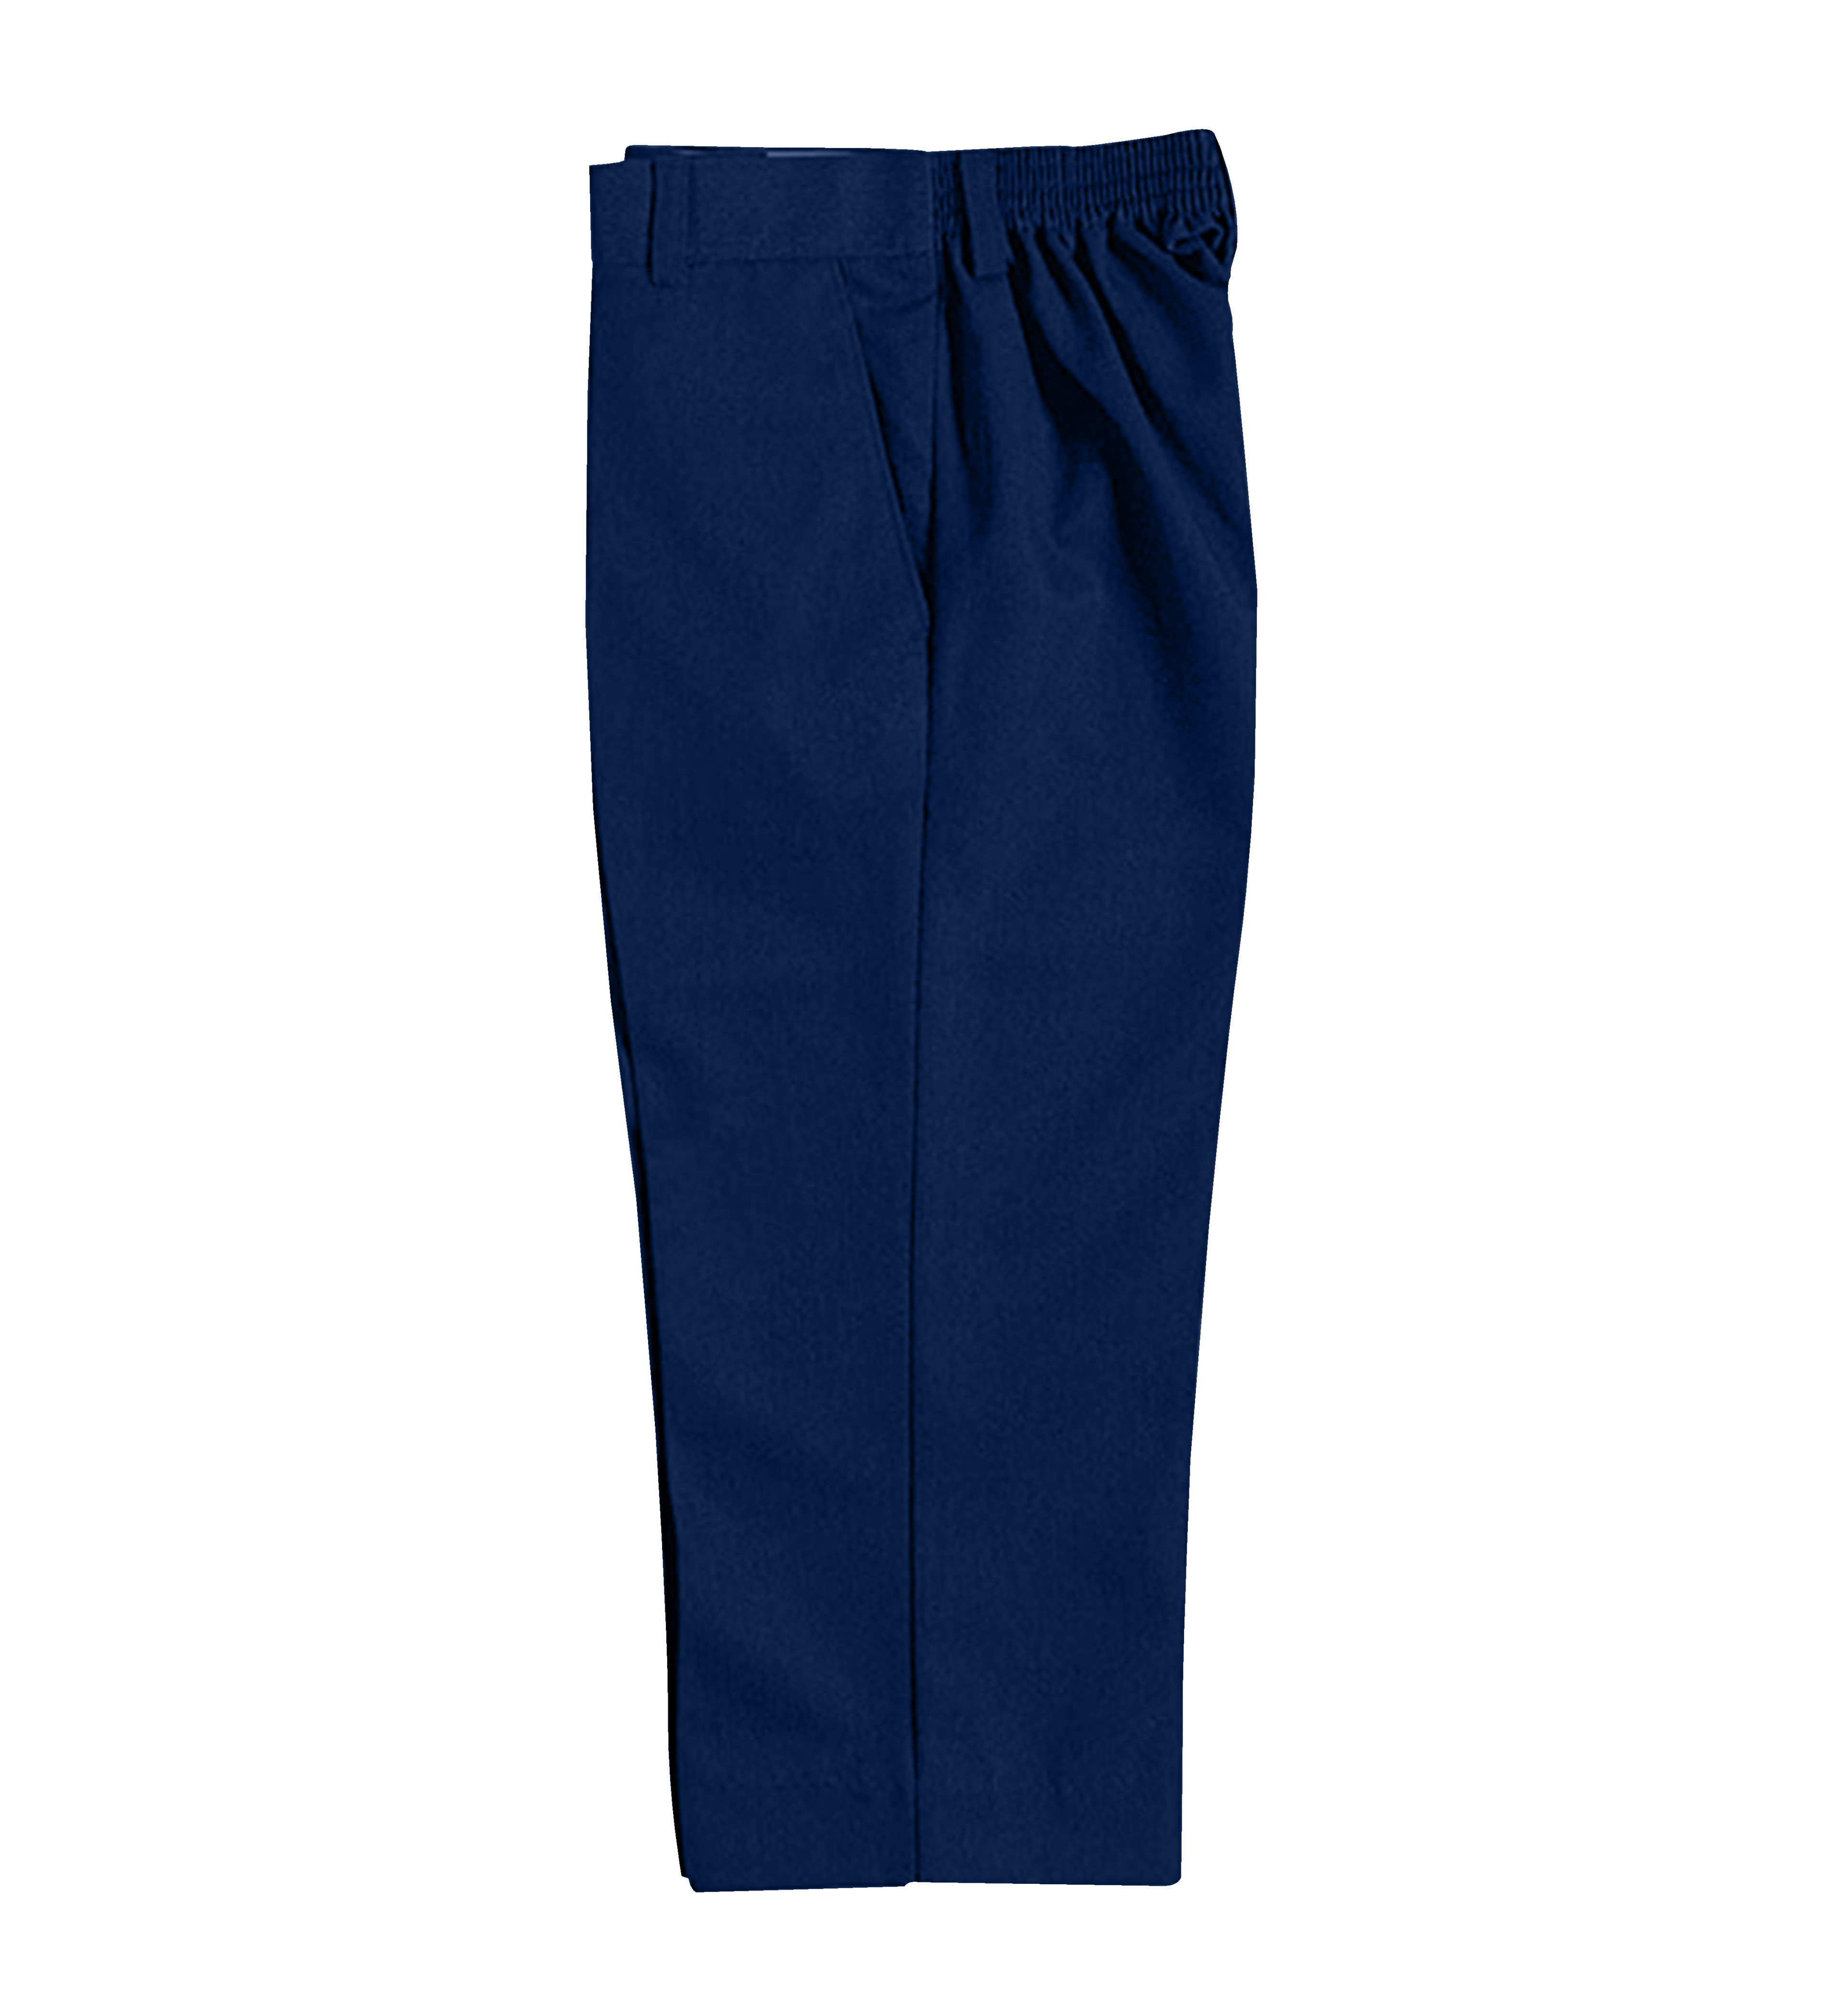 Cresco Academy Elastic Pants - Youniform